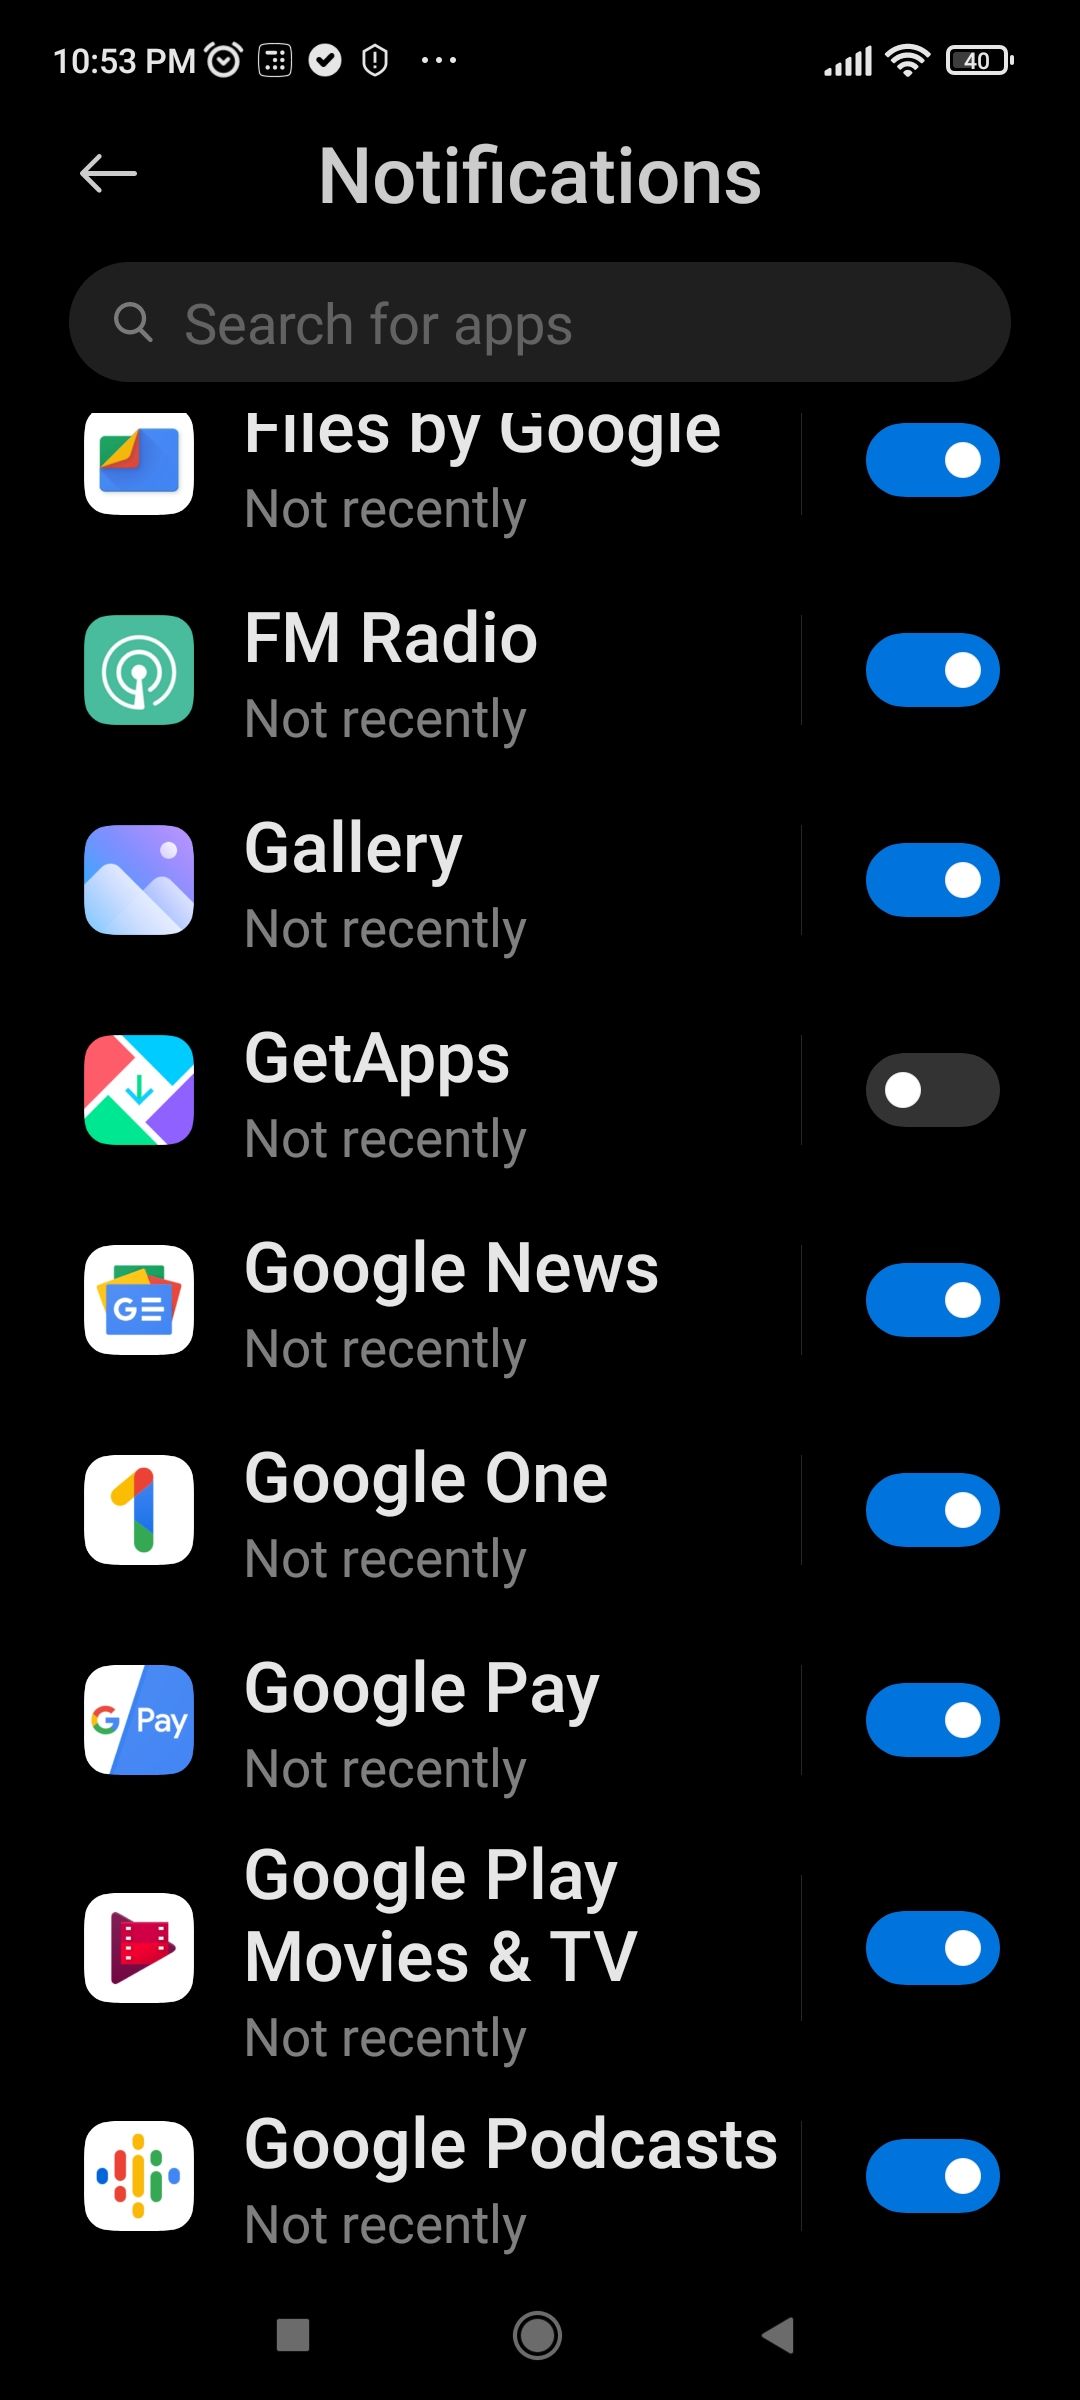 Notifications Screen in Xiaomi Settings